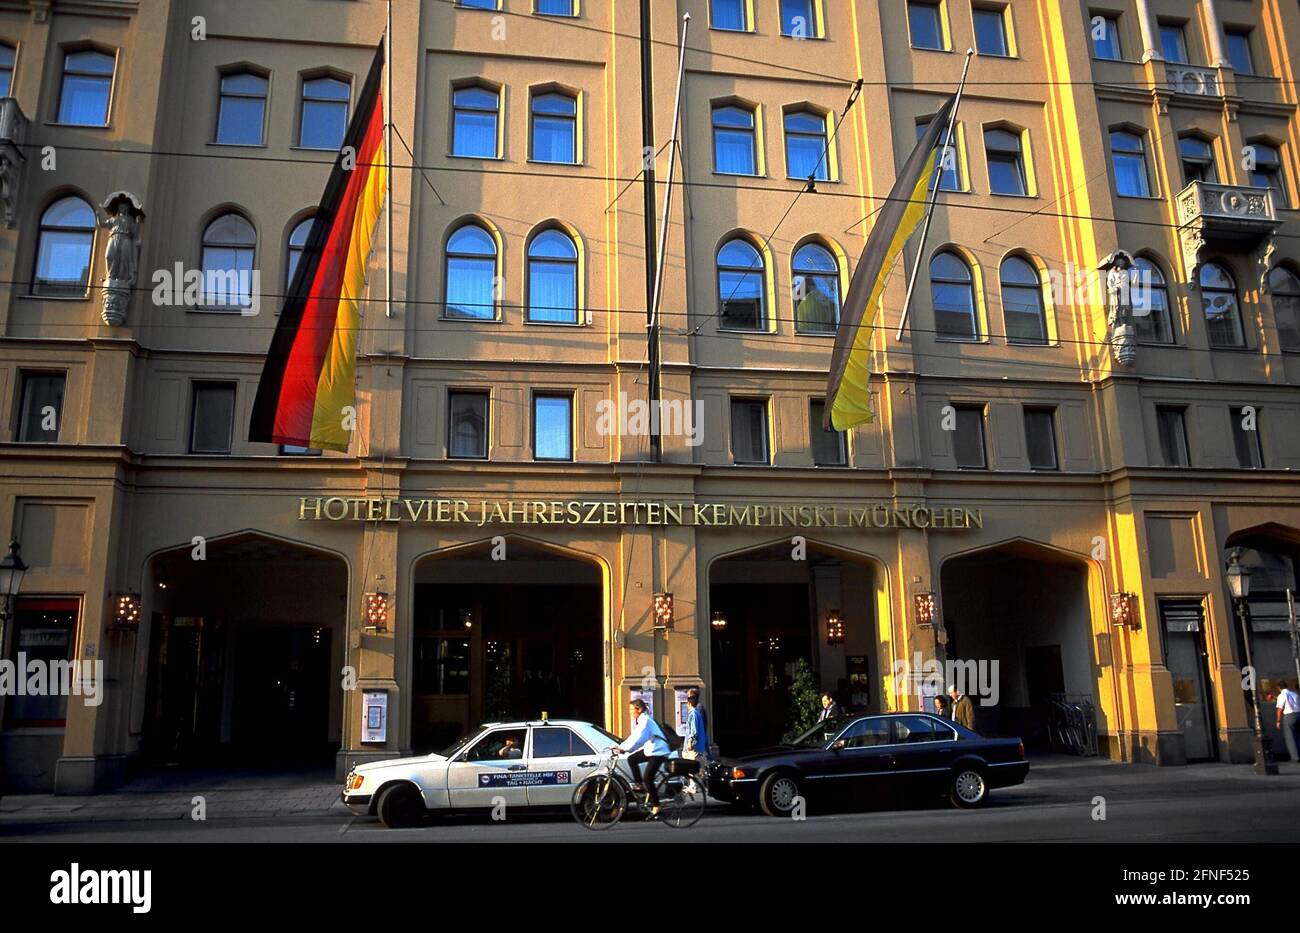 Kempinski Grand Hotel à Munich depuis 1858 (quatre saisons). [traduction automatique] Banque D'Images